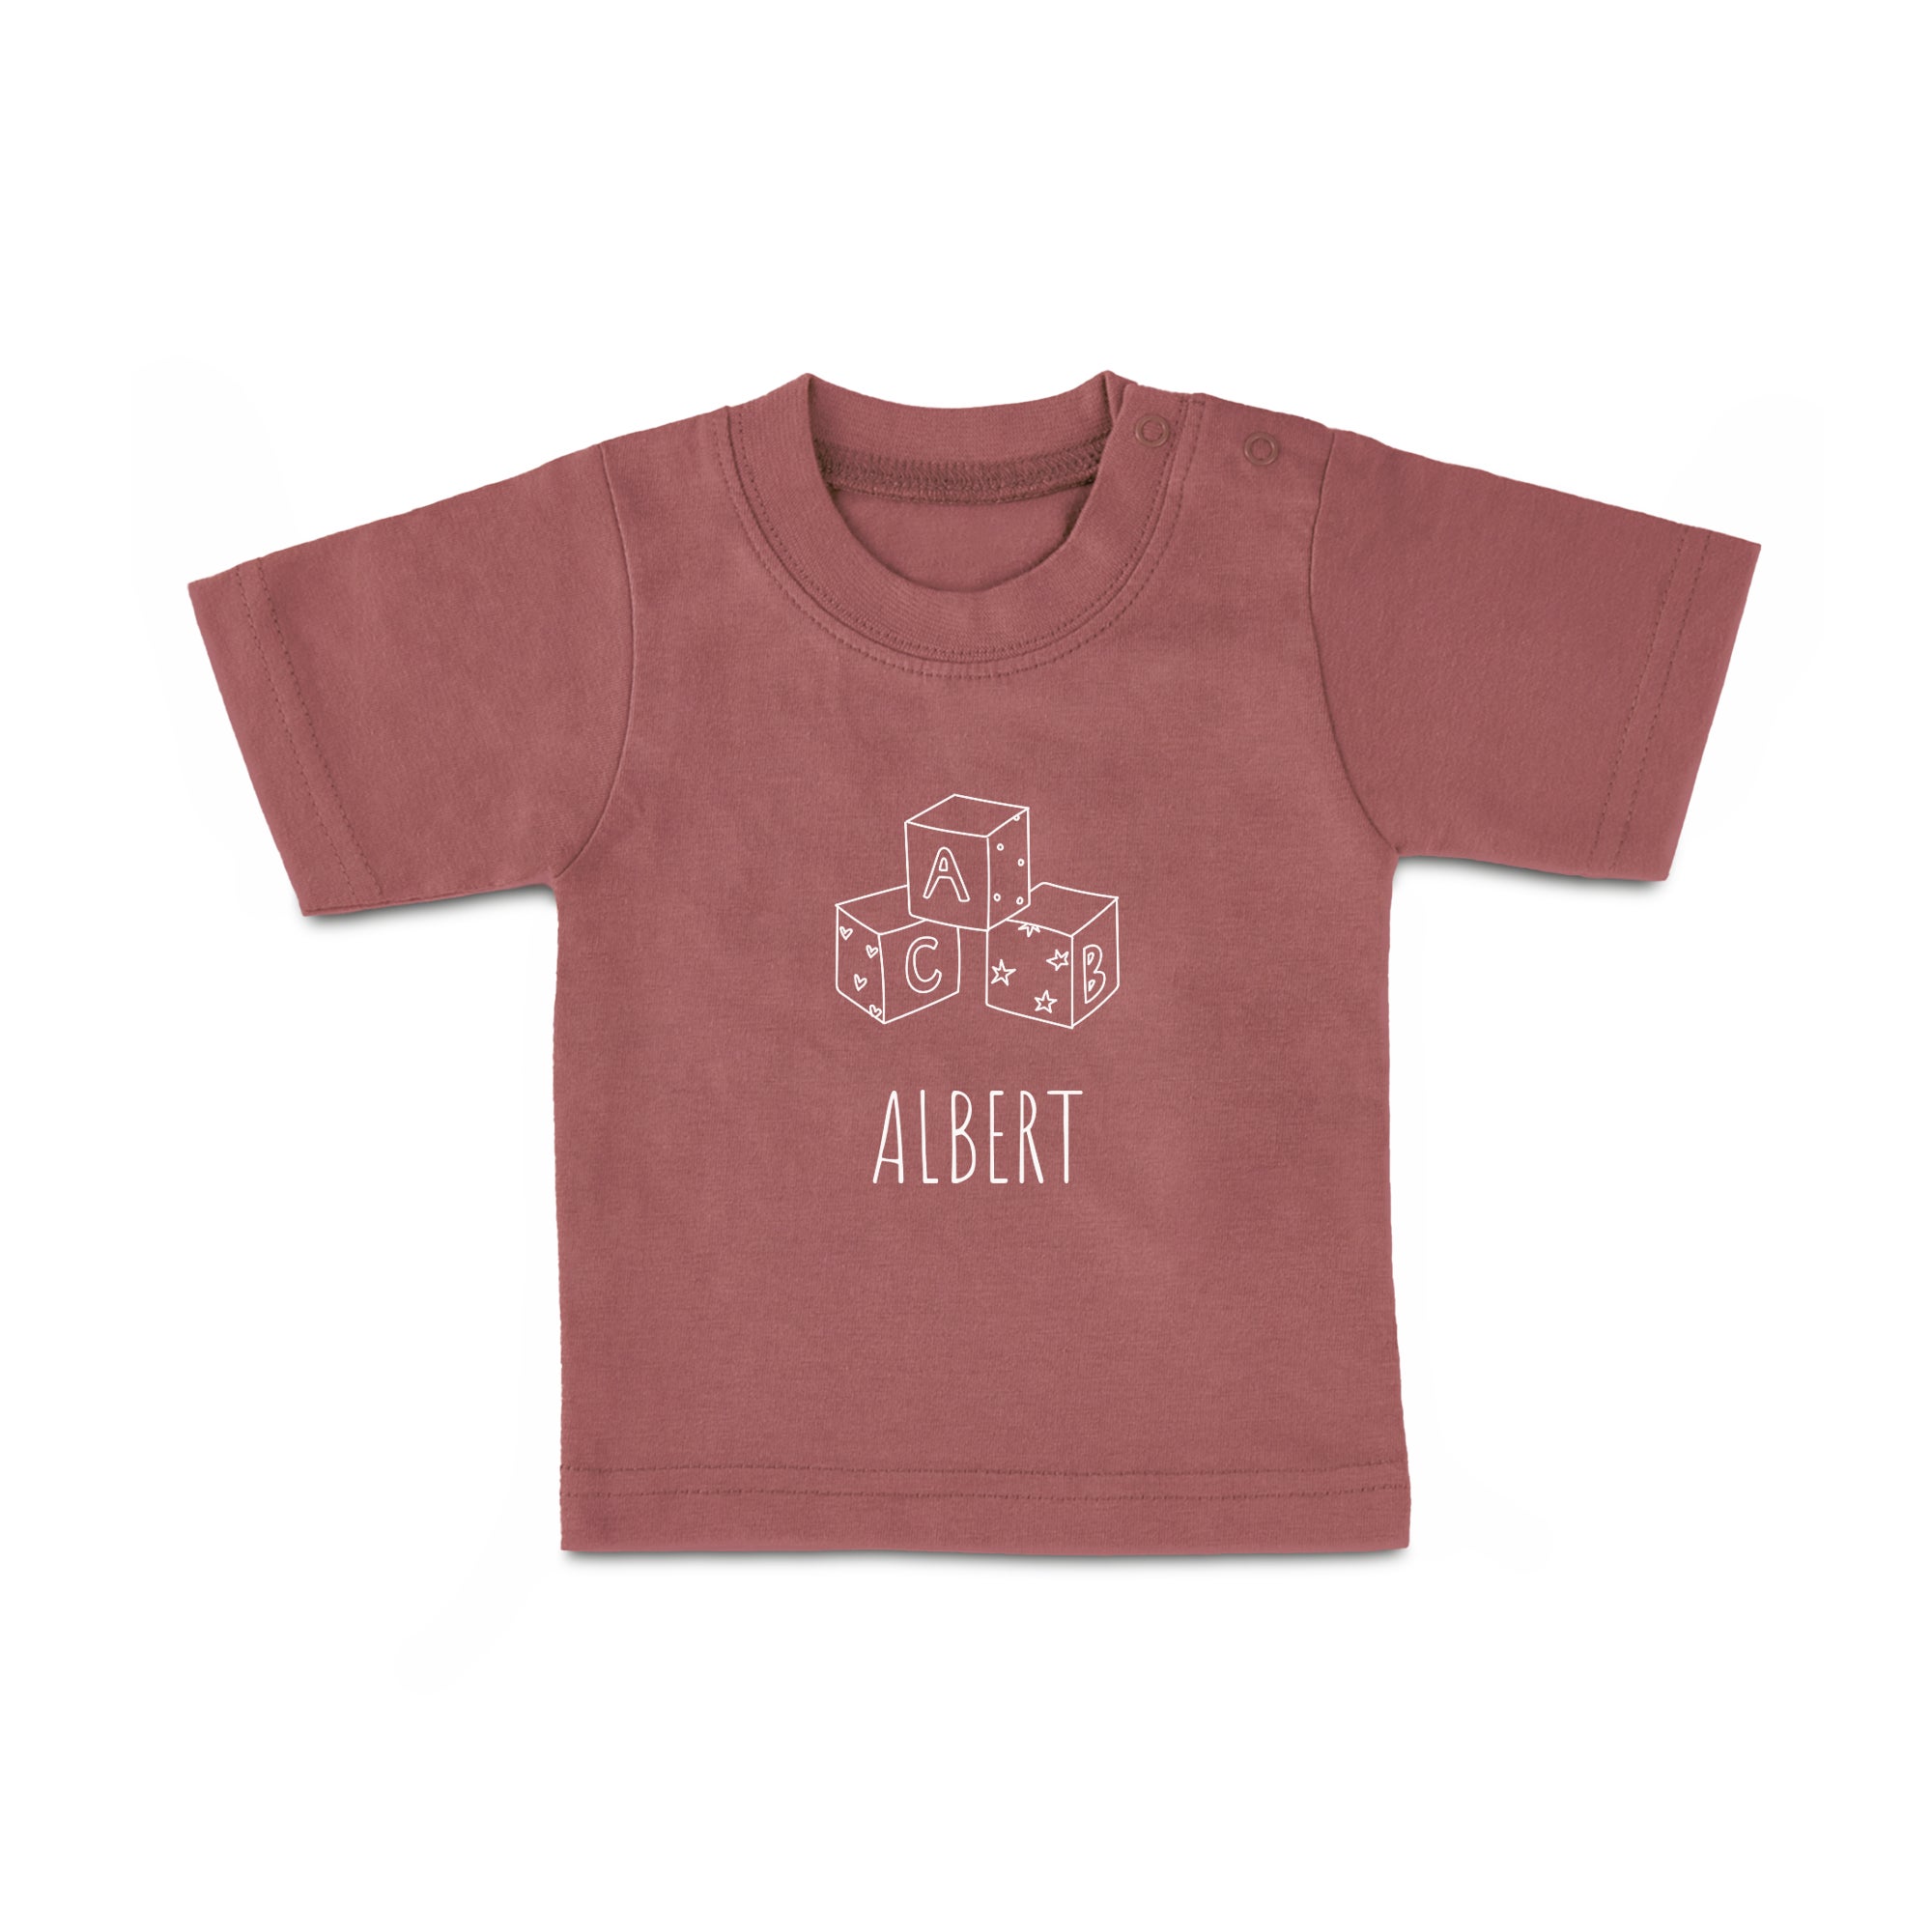 Baby T-Shirt - Printed - Short Sleeves - Pink - 74/80